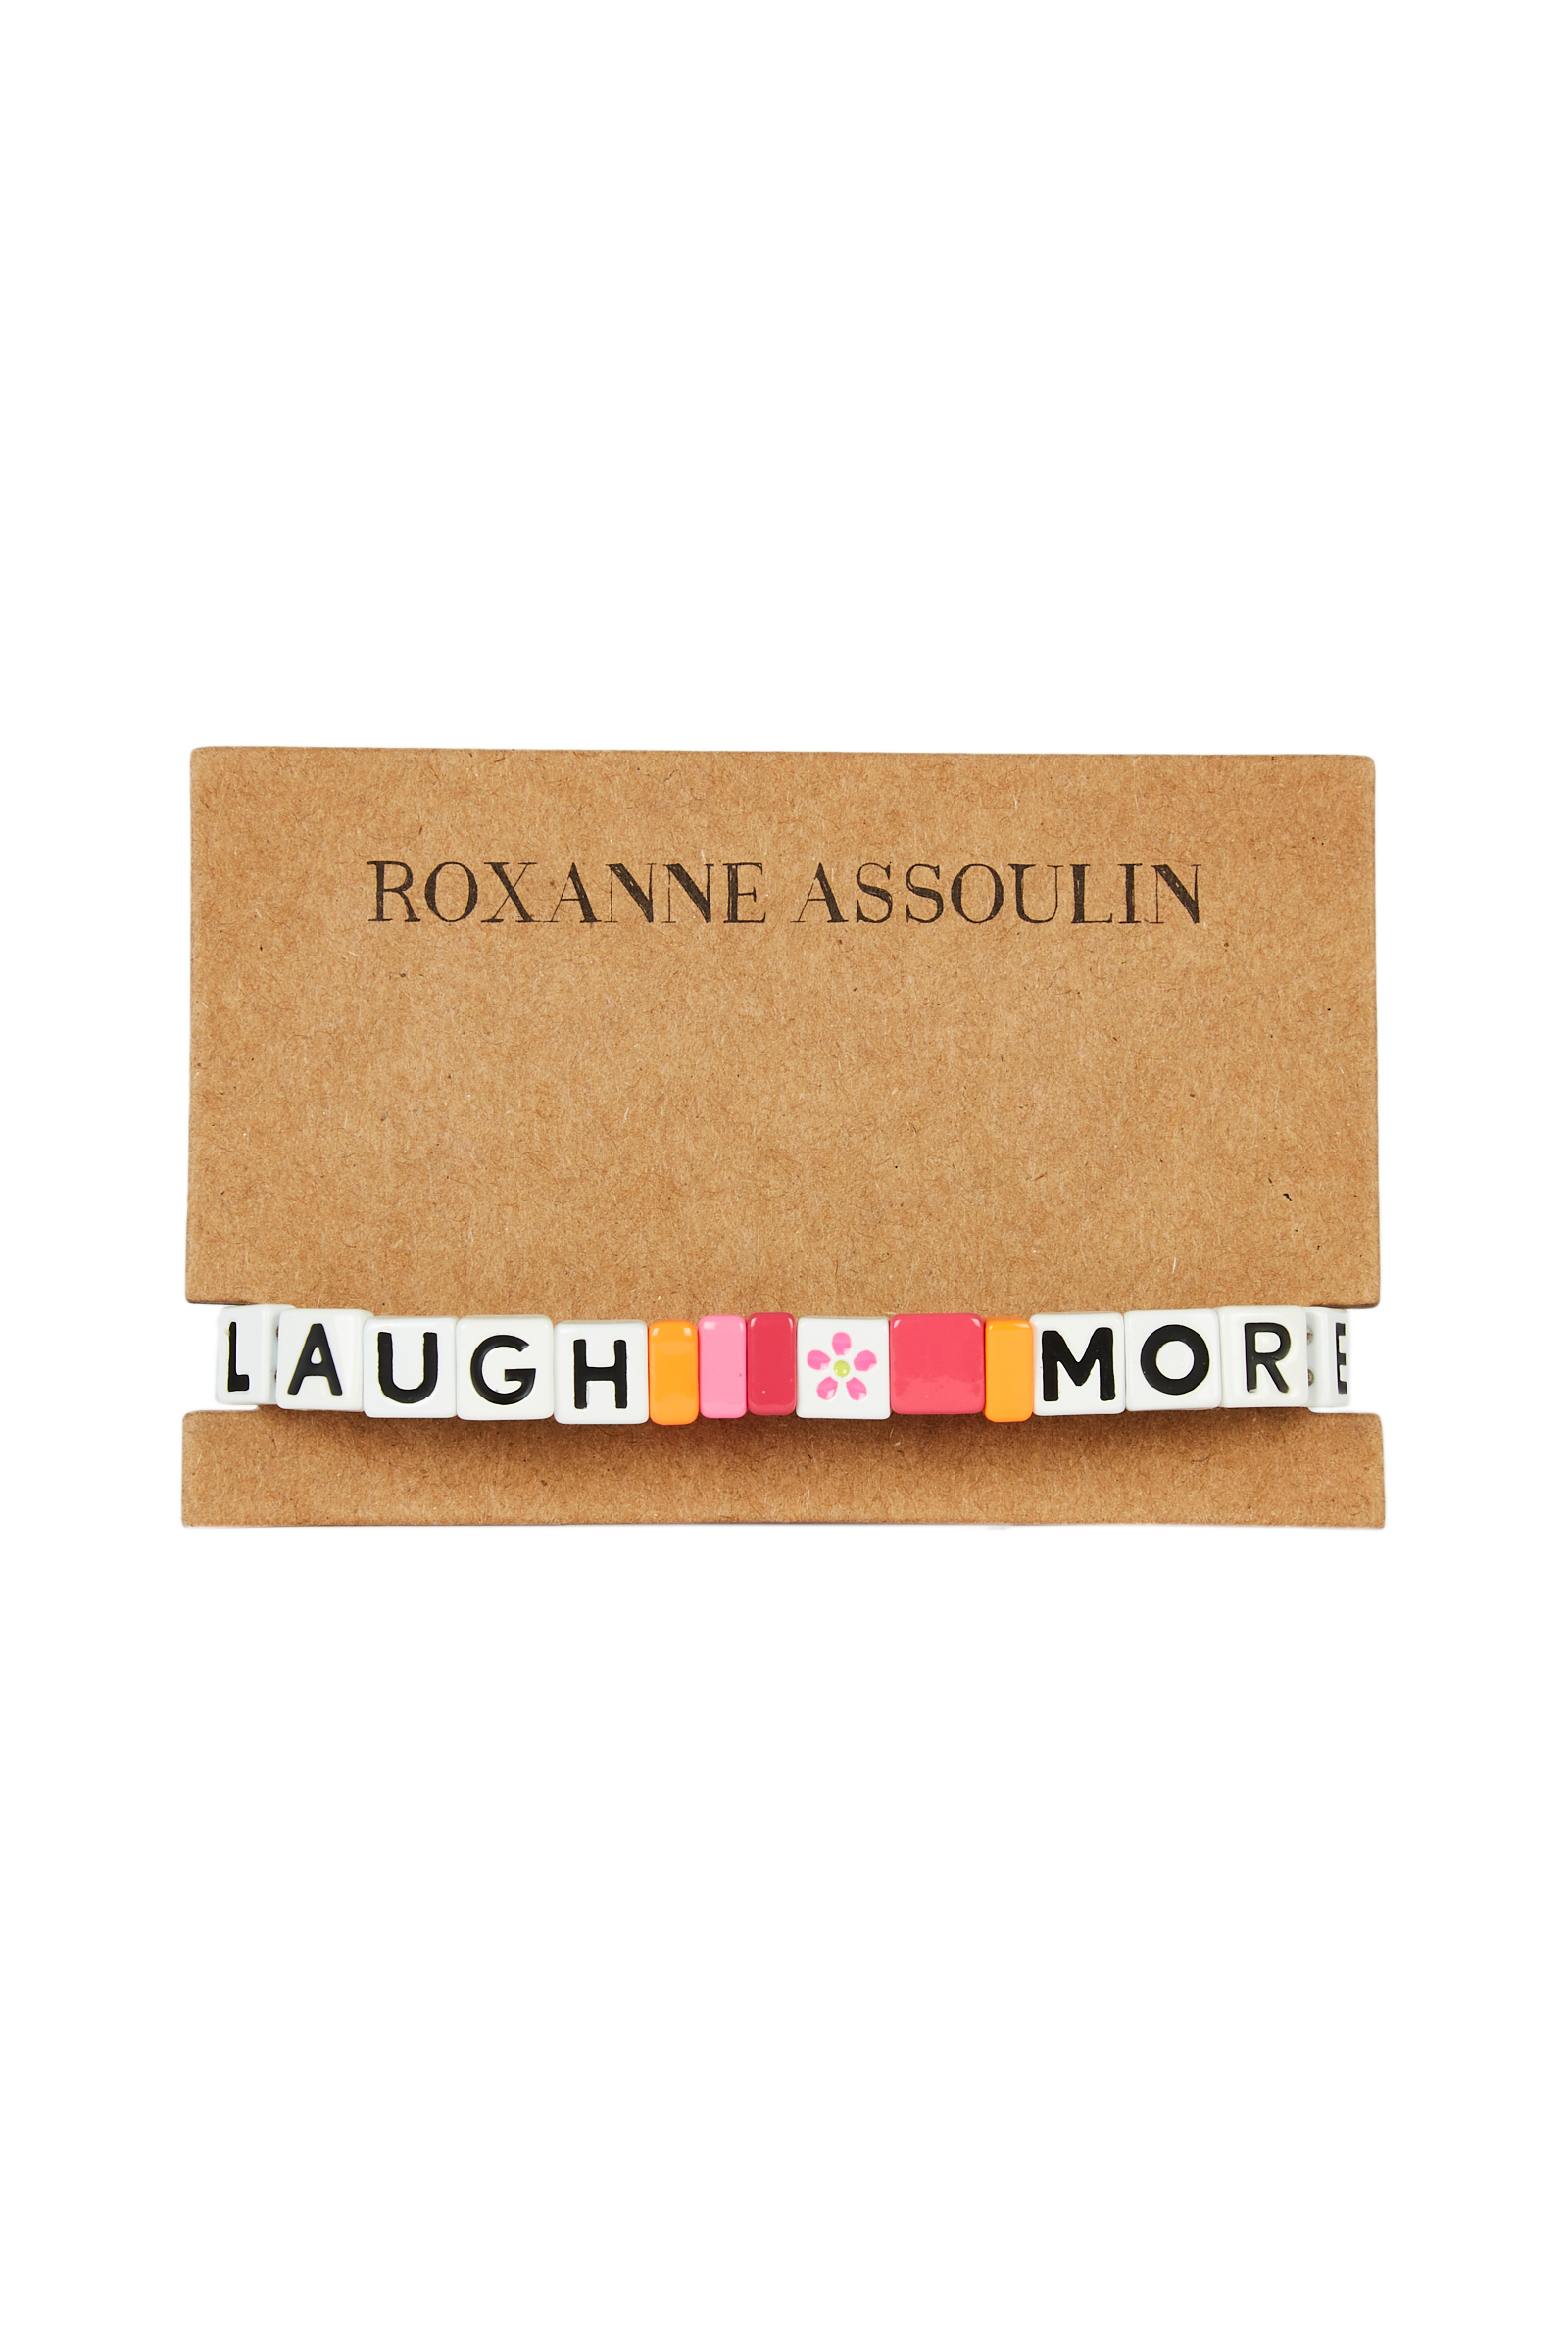 Roxanne Assoulin - Laugh More Bracelet 